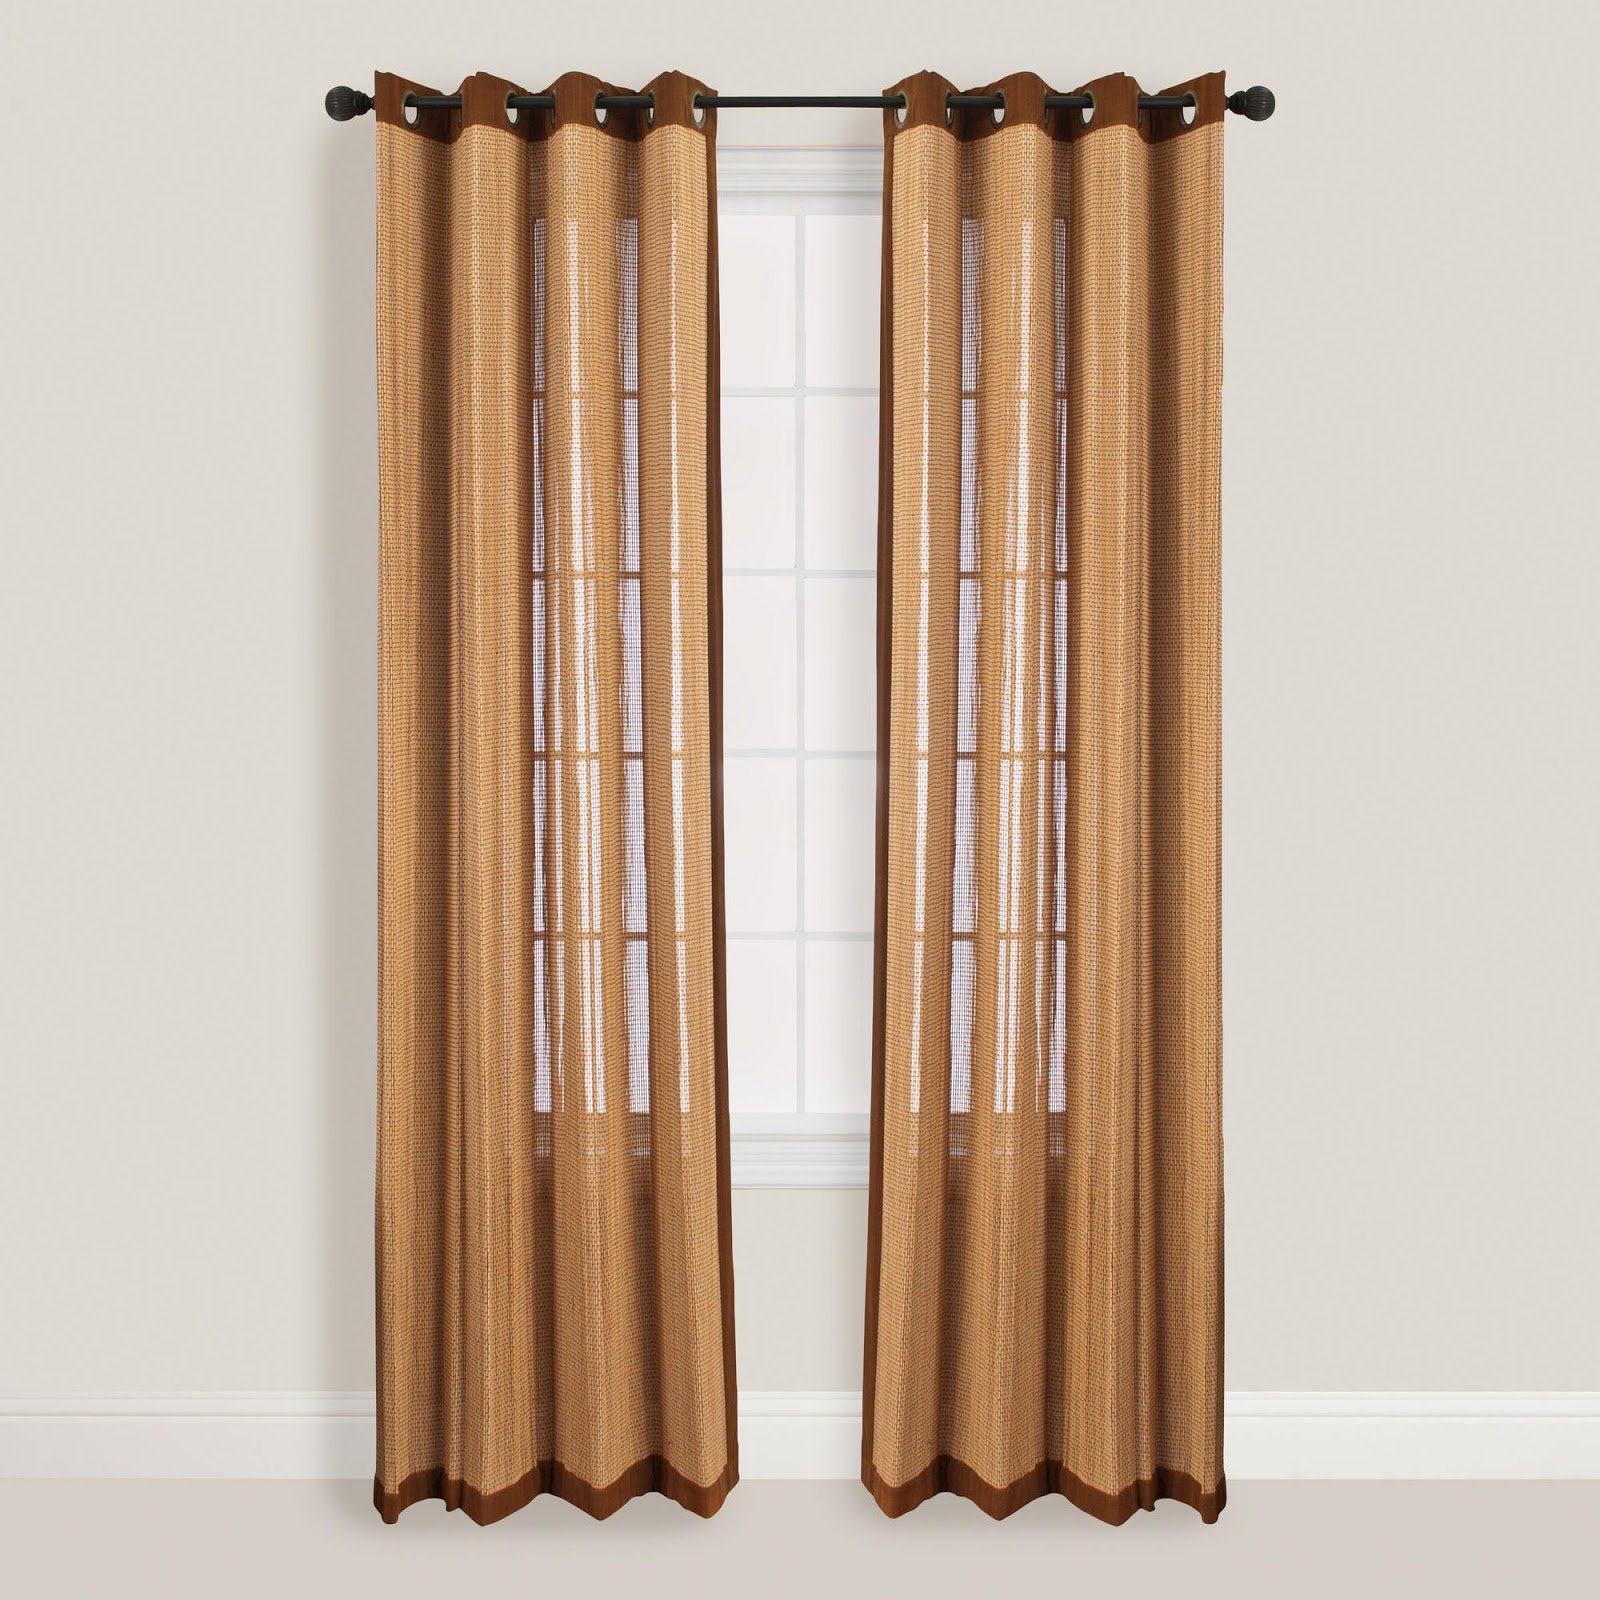 Деревянная шторка. Бамбуковая занавеска на дверь. Шторы из бамбука. Бамбуковые шторы на дверной проем. Шторы гармошкой.